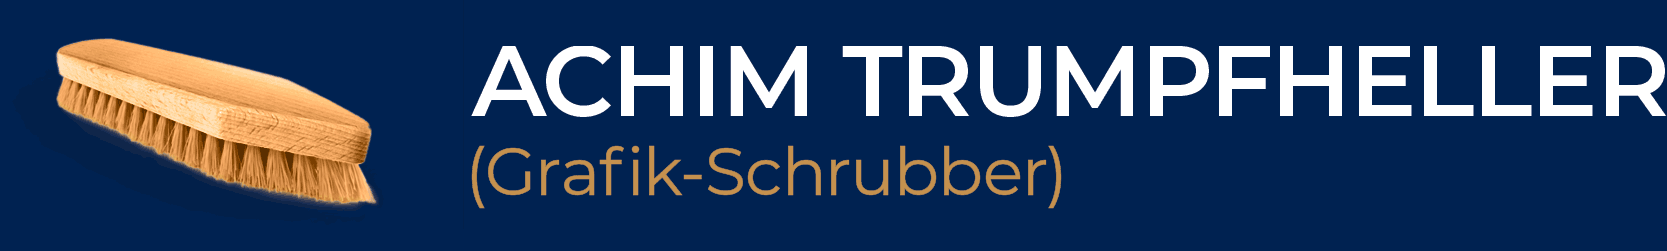 Achim Trumpfheller (Grafik-Schrubber) Logo